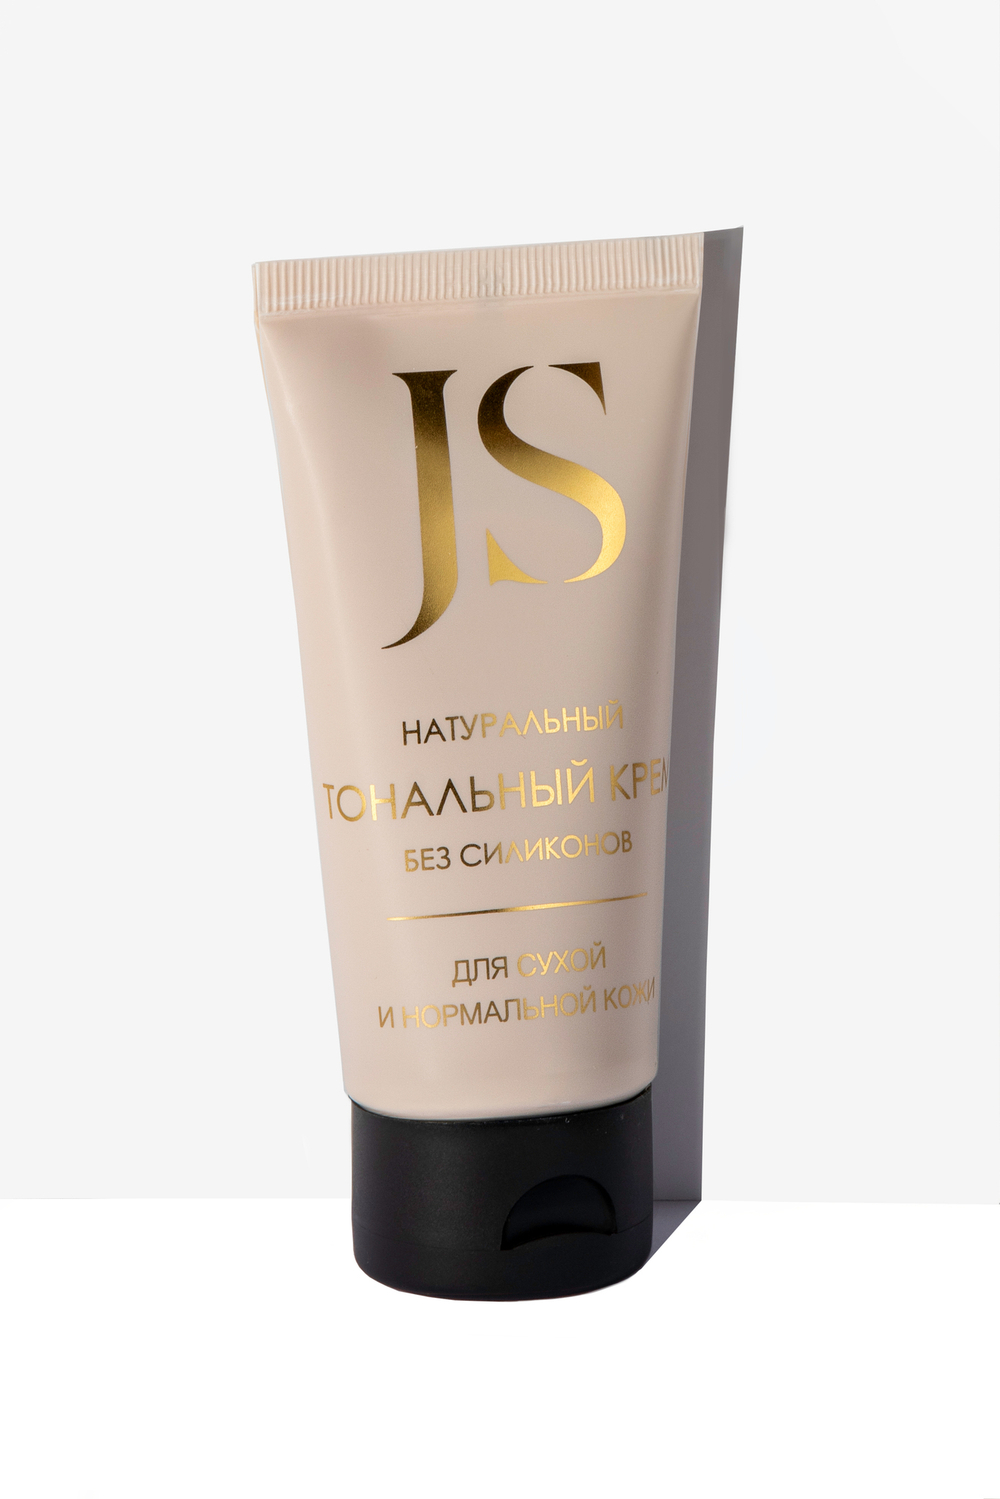 JS Натуральный тональный крем для нормальной и сухой кожи, светло-бежевый, туба 50 мл, Jurassic Spa